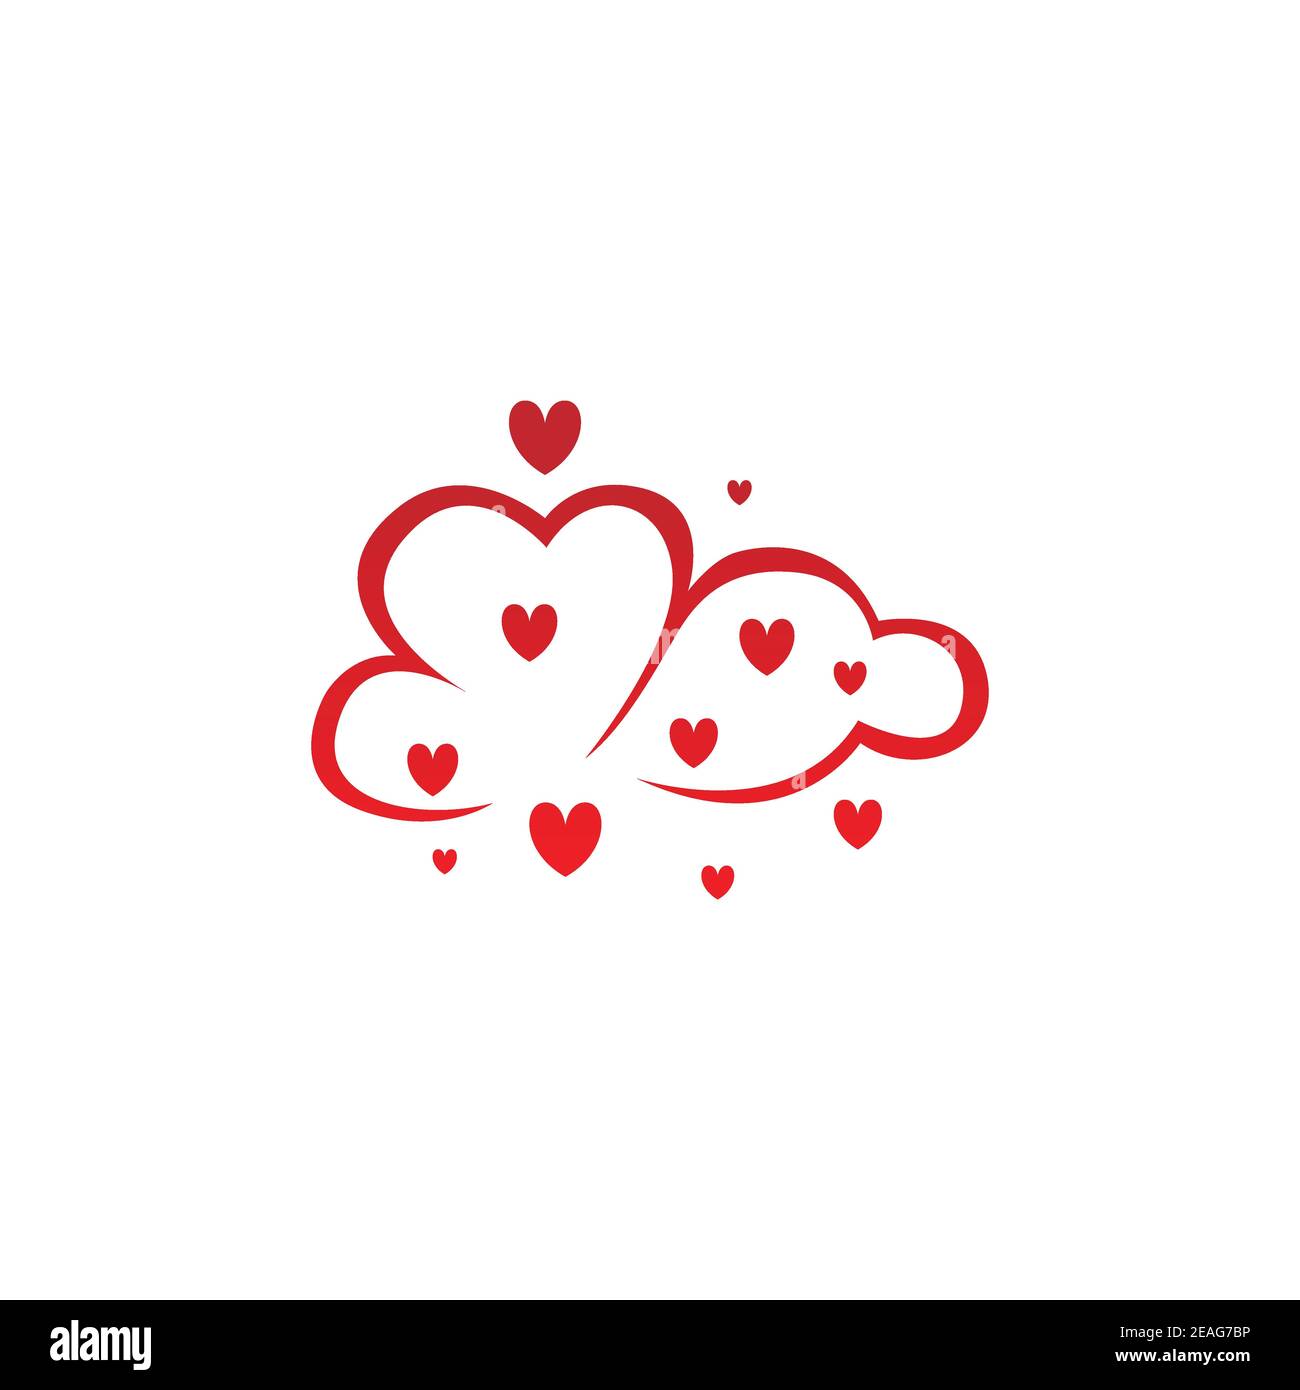 Illustrazione del design del logo di una nuvola d'amore creativa di colore rosso. La nuvola con la forma del cuore rosso rappresenta un vettore di logo di design Love Concept Illustrazione Vettoriale